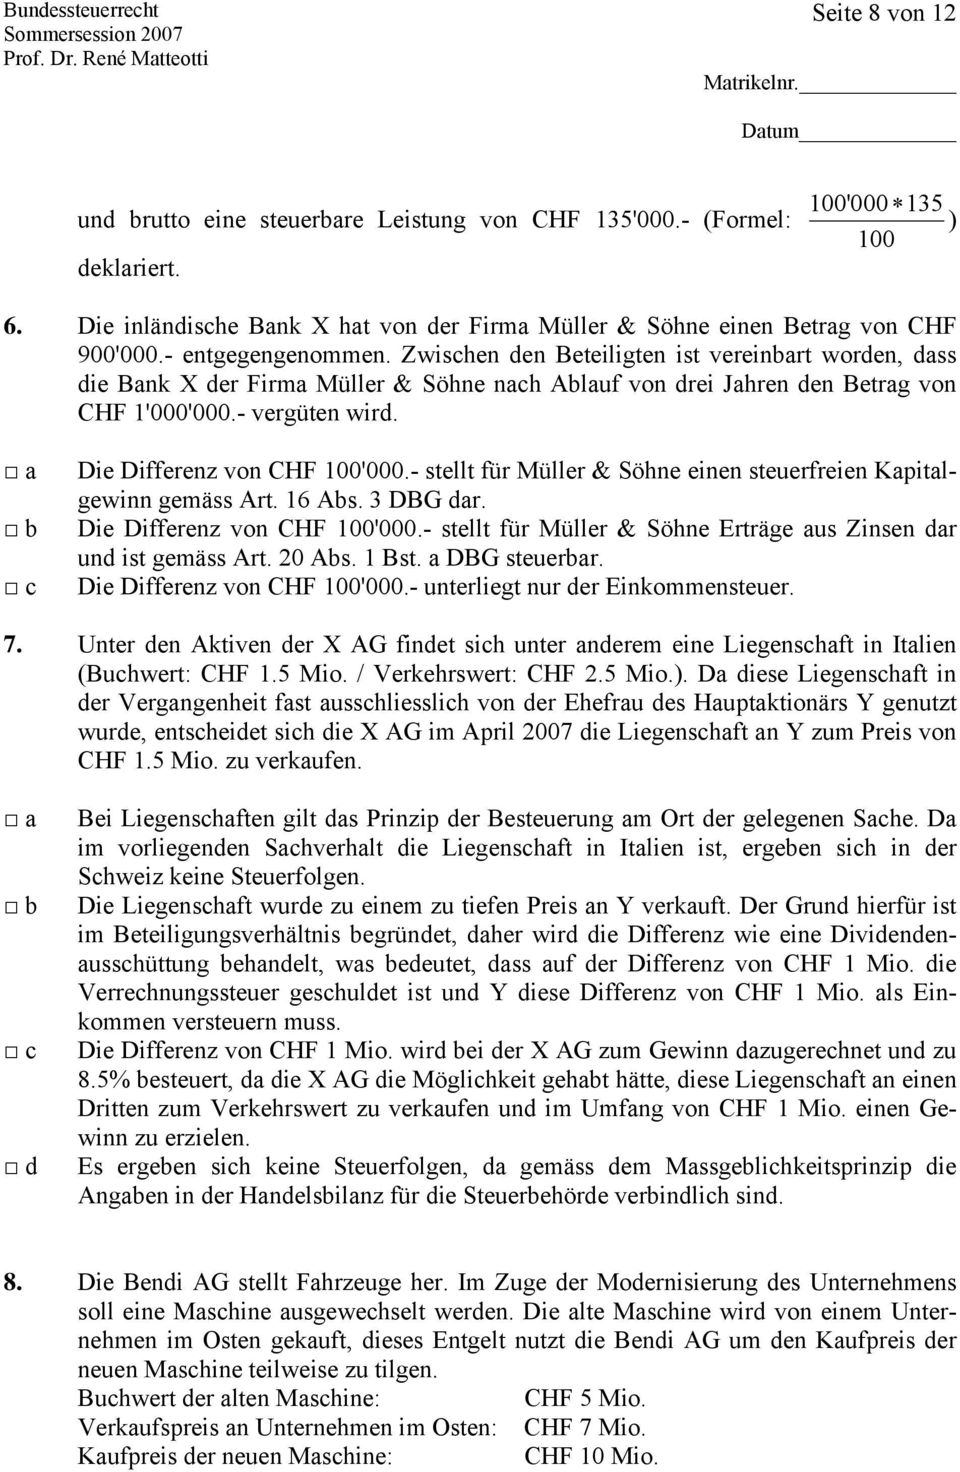 Die Differenz von CHF 100'000.- stellt für Müller & Söhne einen steuerfreien Kapitalgewinn gemäss Art. 16 Abs. 3 DBG dar. Die Differenz von CHF 100'000.